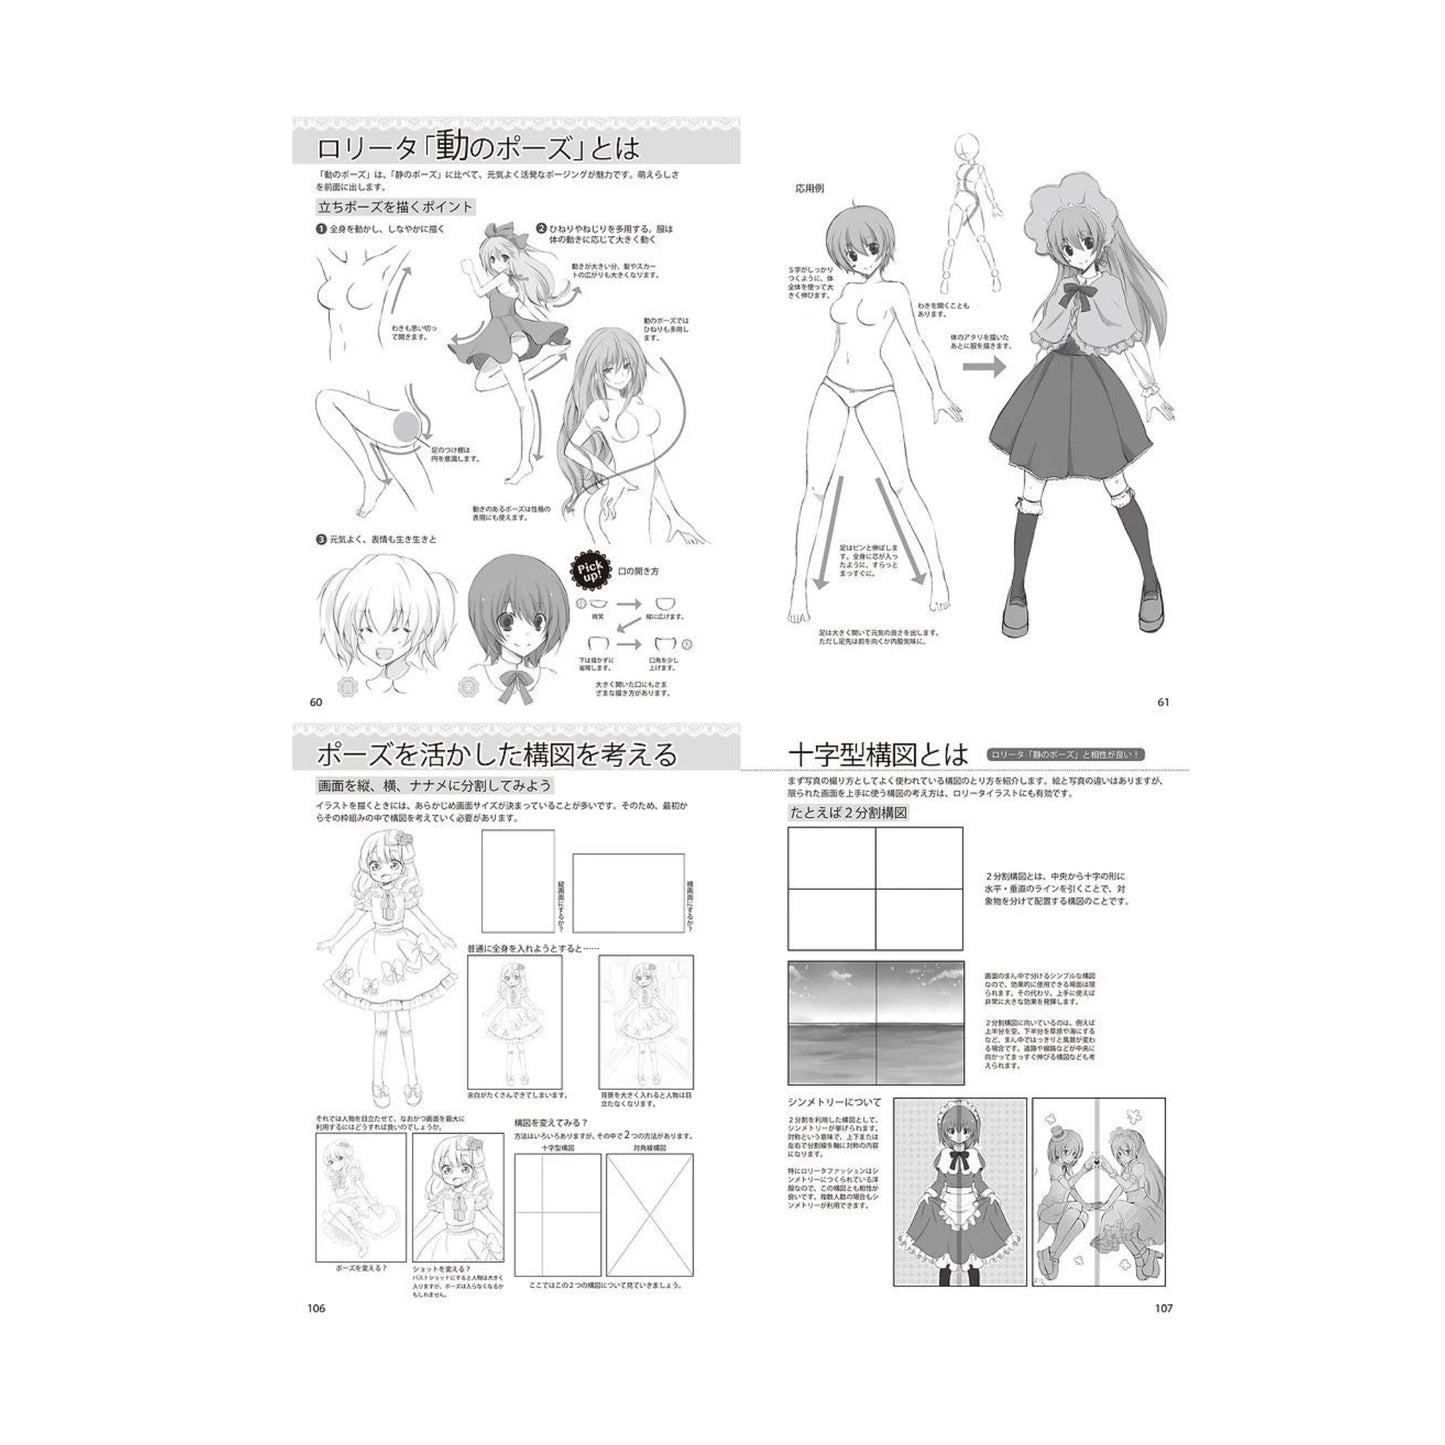 How to draw - jap. Zeichenbuch - Moe Lolita Fashion: Posen und Kompositionen